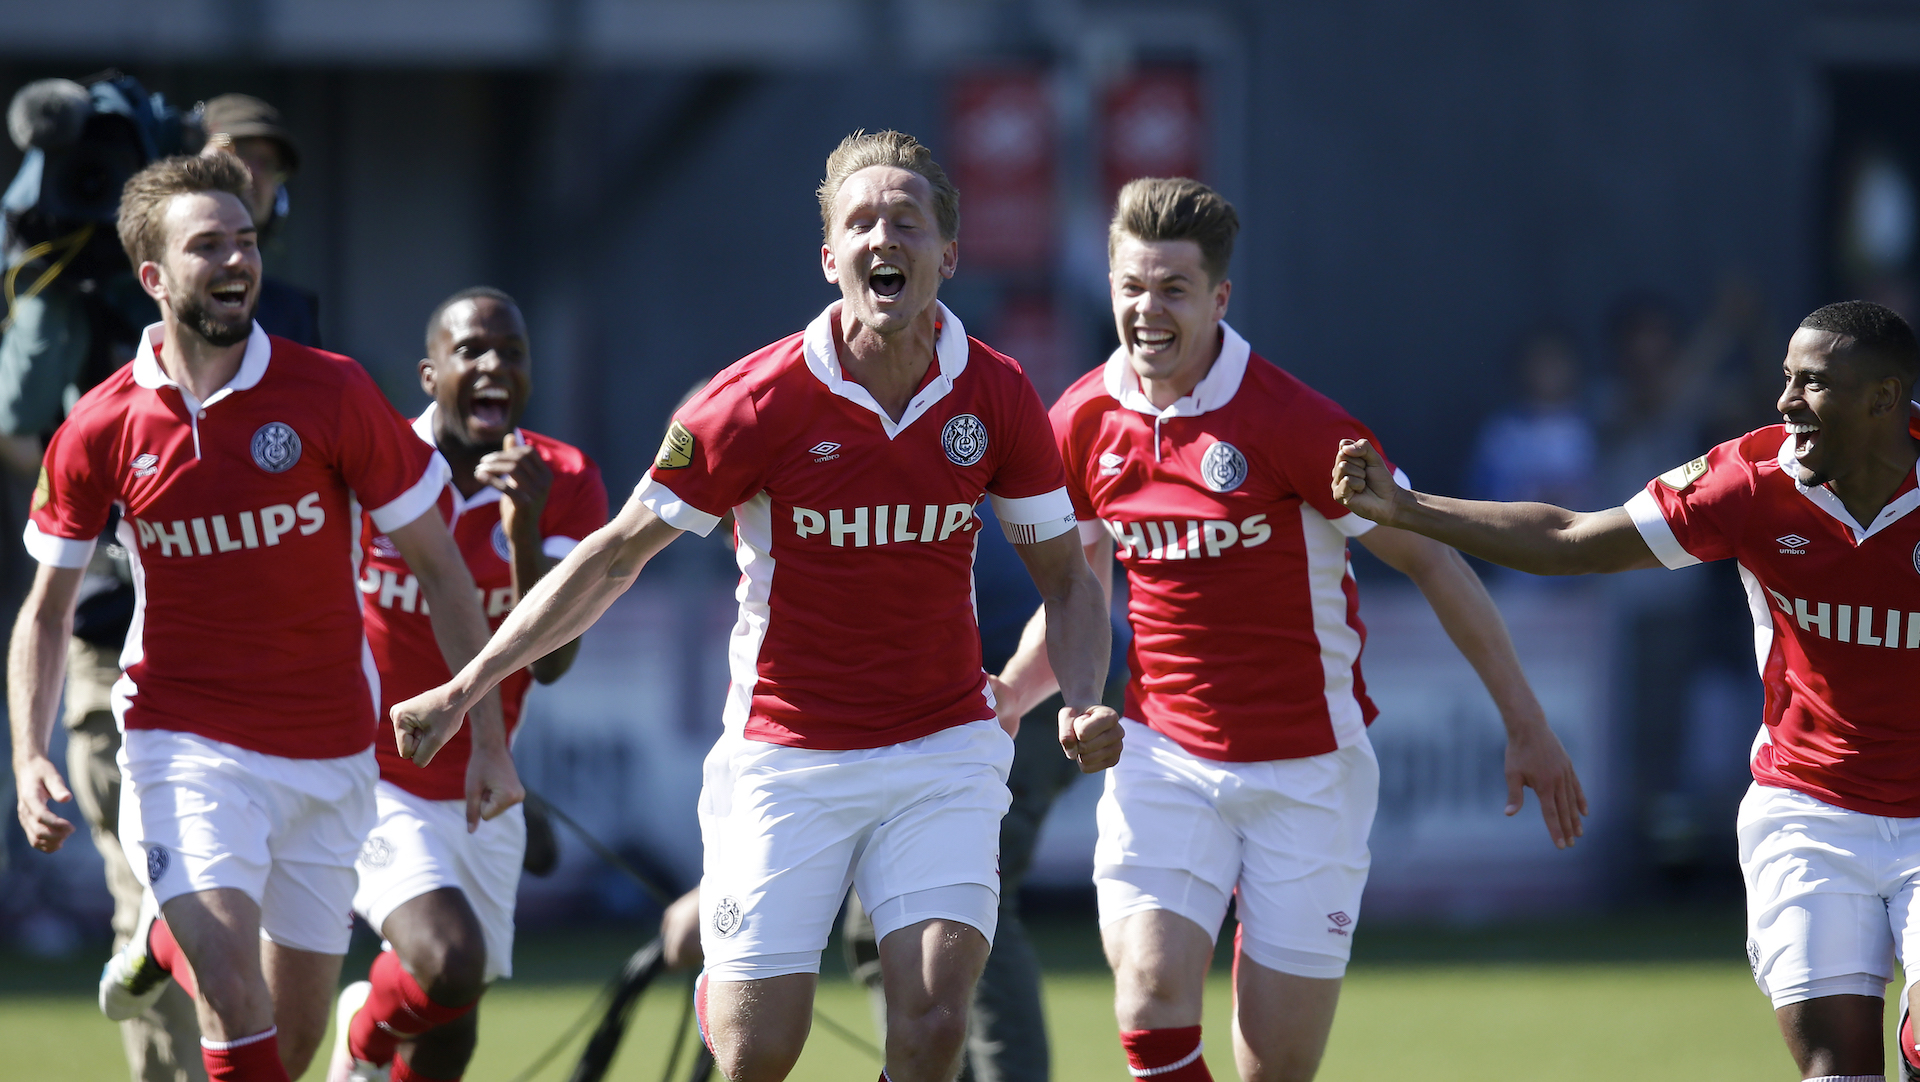 Alles Over | PSV bij overwinning decennium ongeslagen in Zwolle